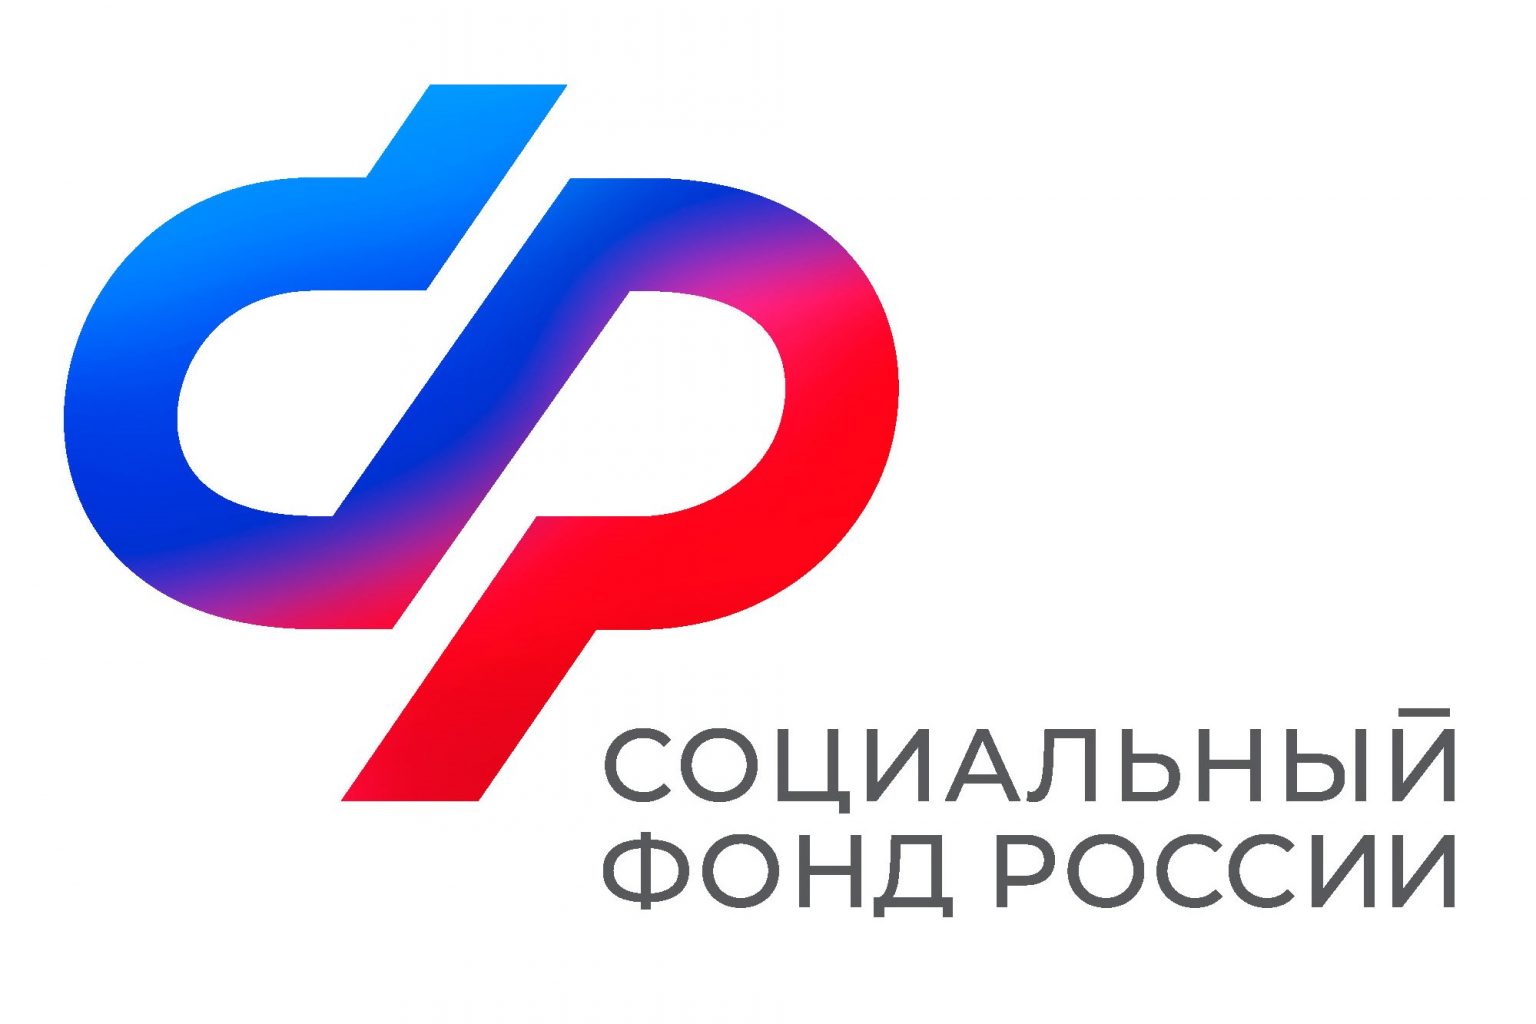 Отделение Социального фонда России по Курской области вводит дополнительный день приема граждан.